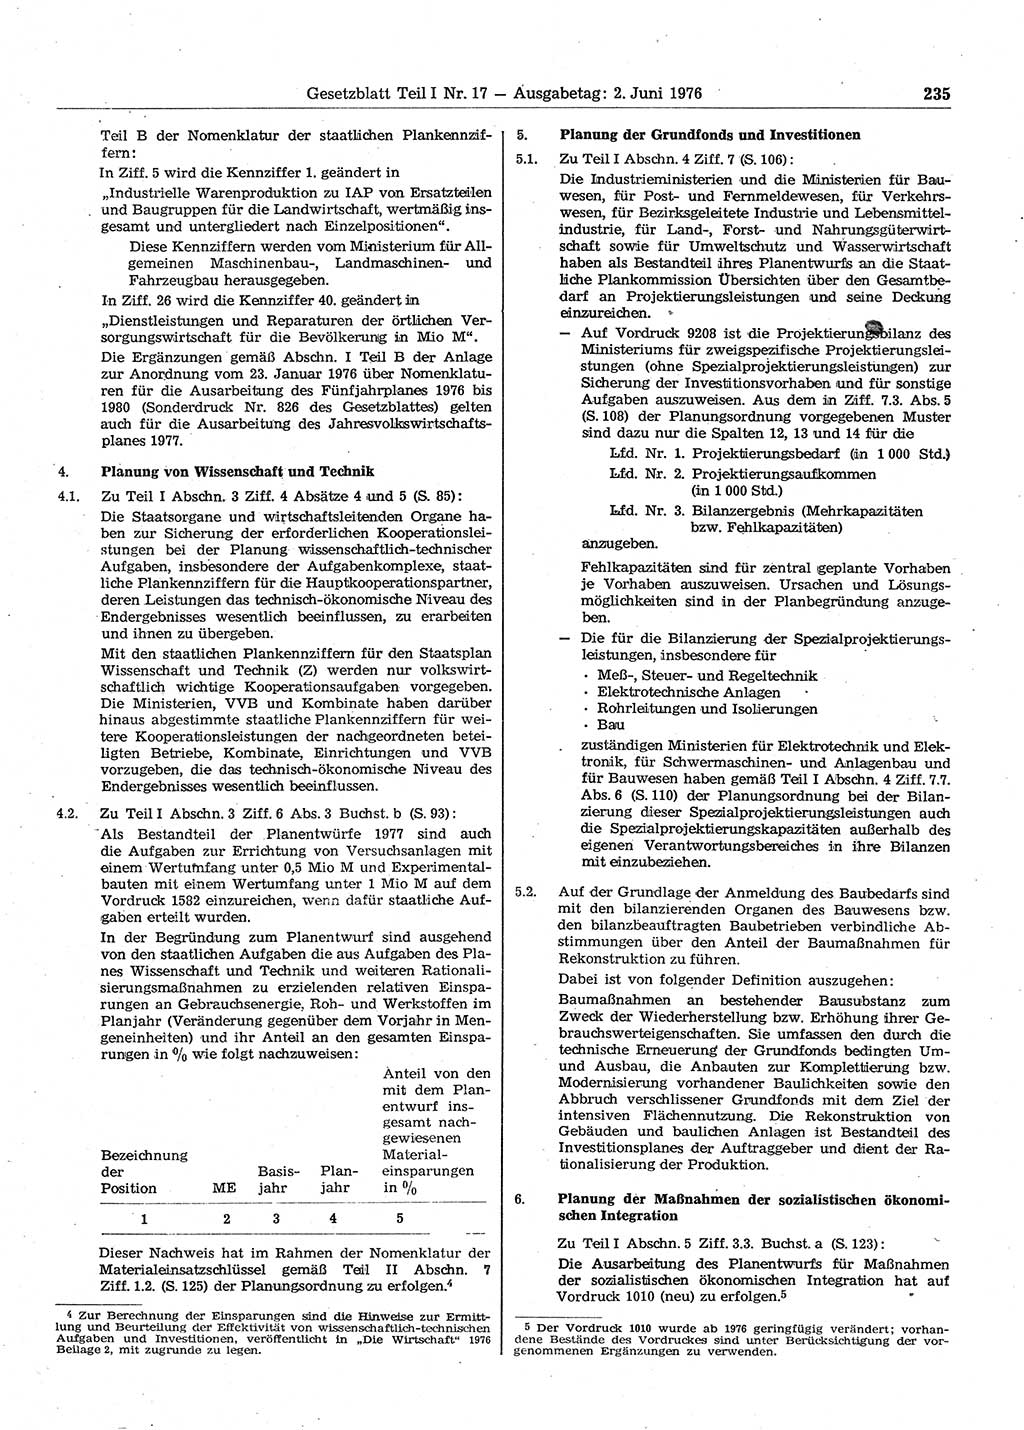 Gesetzblatt (GBl.) der Deutschen Demokratischen Republik (DDR) Teil Ⅰ 1976, Seite 235 (GBl. DDR Ⅰ 1976, S. 235)